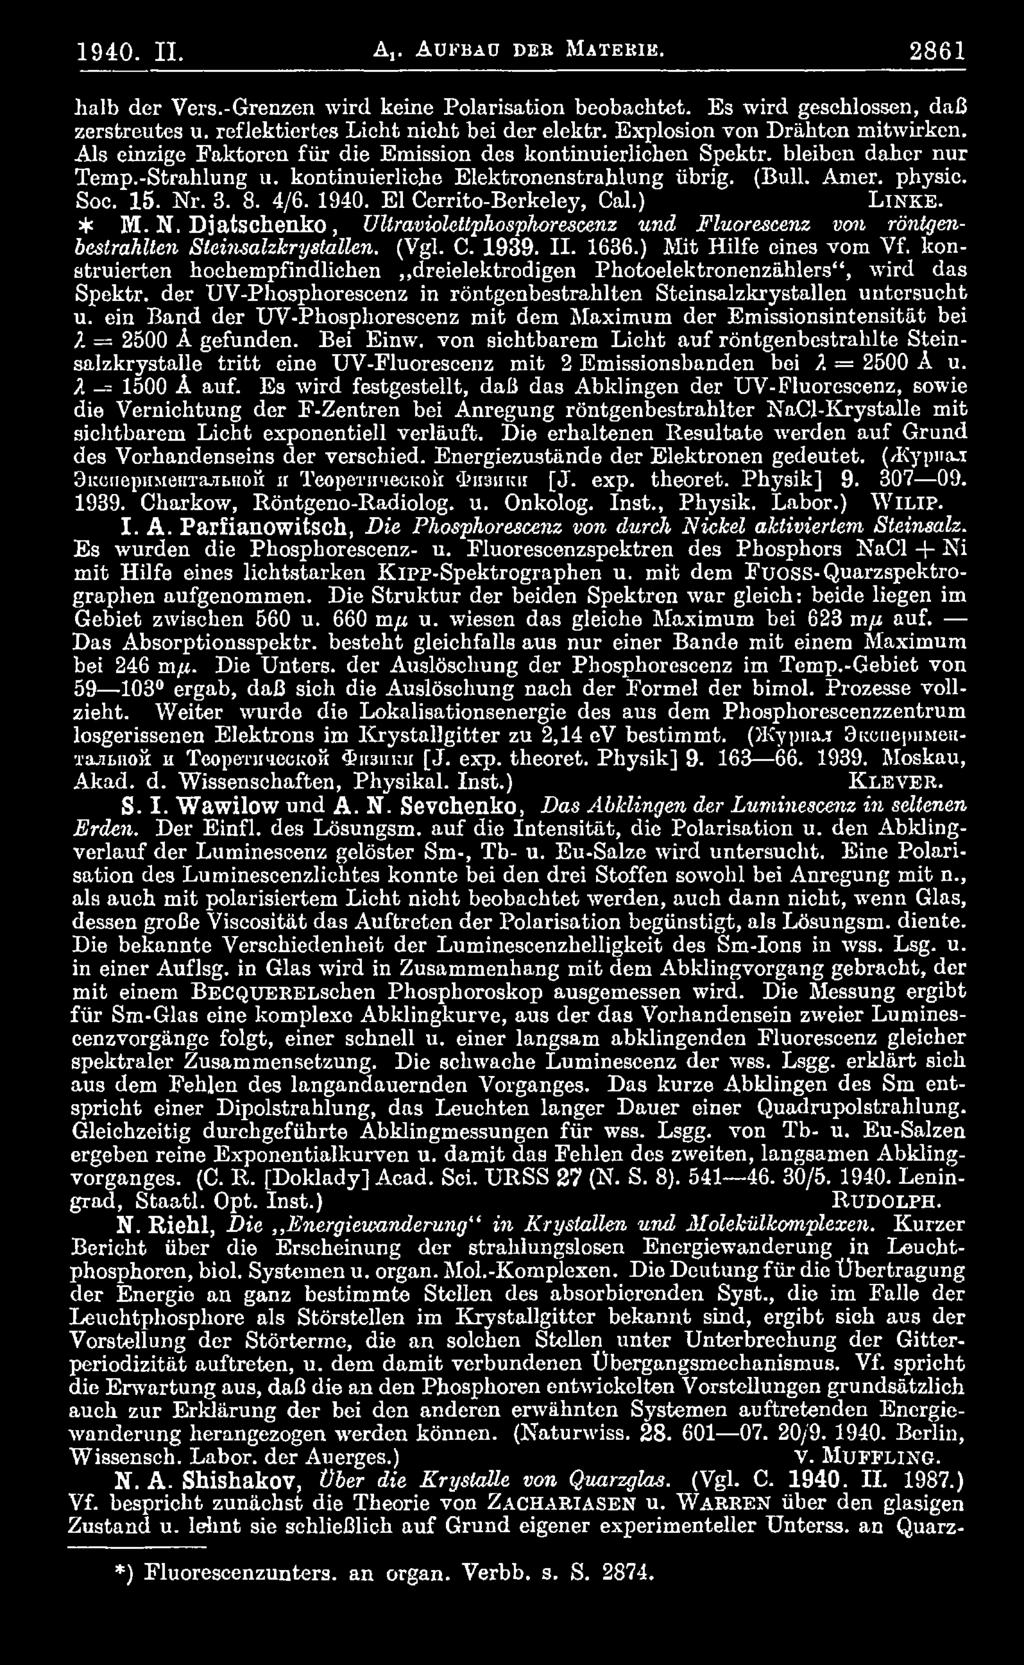 Soc. 15. Nr. 3. 8. 4/6. 1940. El Cerrito-Berkeley, Cal.) L i n k e. * M. N. Djatschenko, UUraviolettphosphorescenz und Fluorescenz von röntgenbestrahlten Stcin-sahkrystallen. (Vgl. C. 1939. II. 1636.